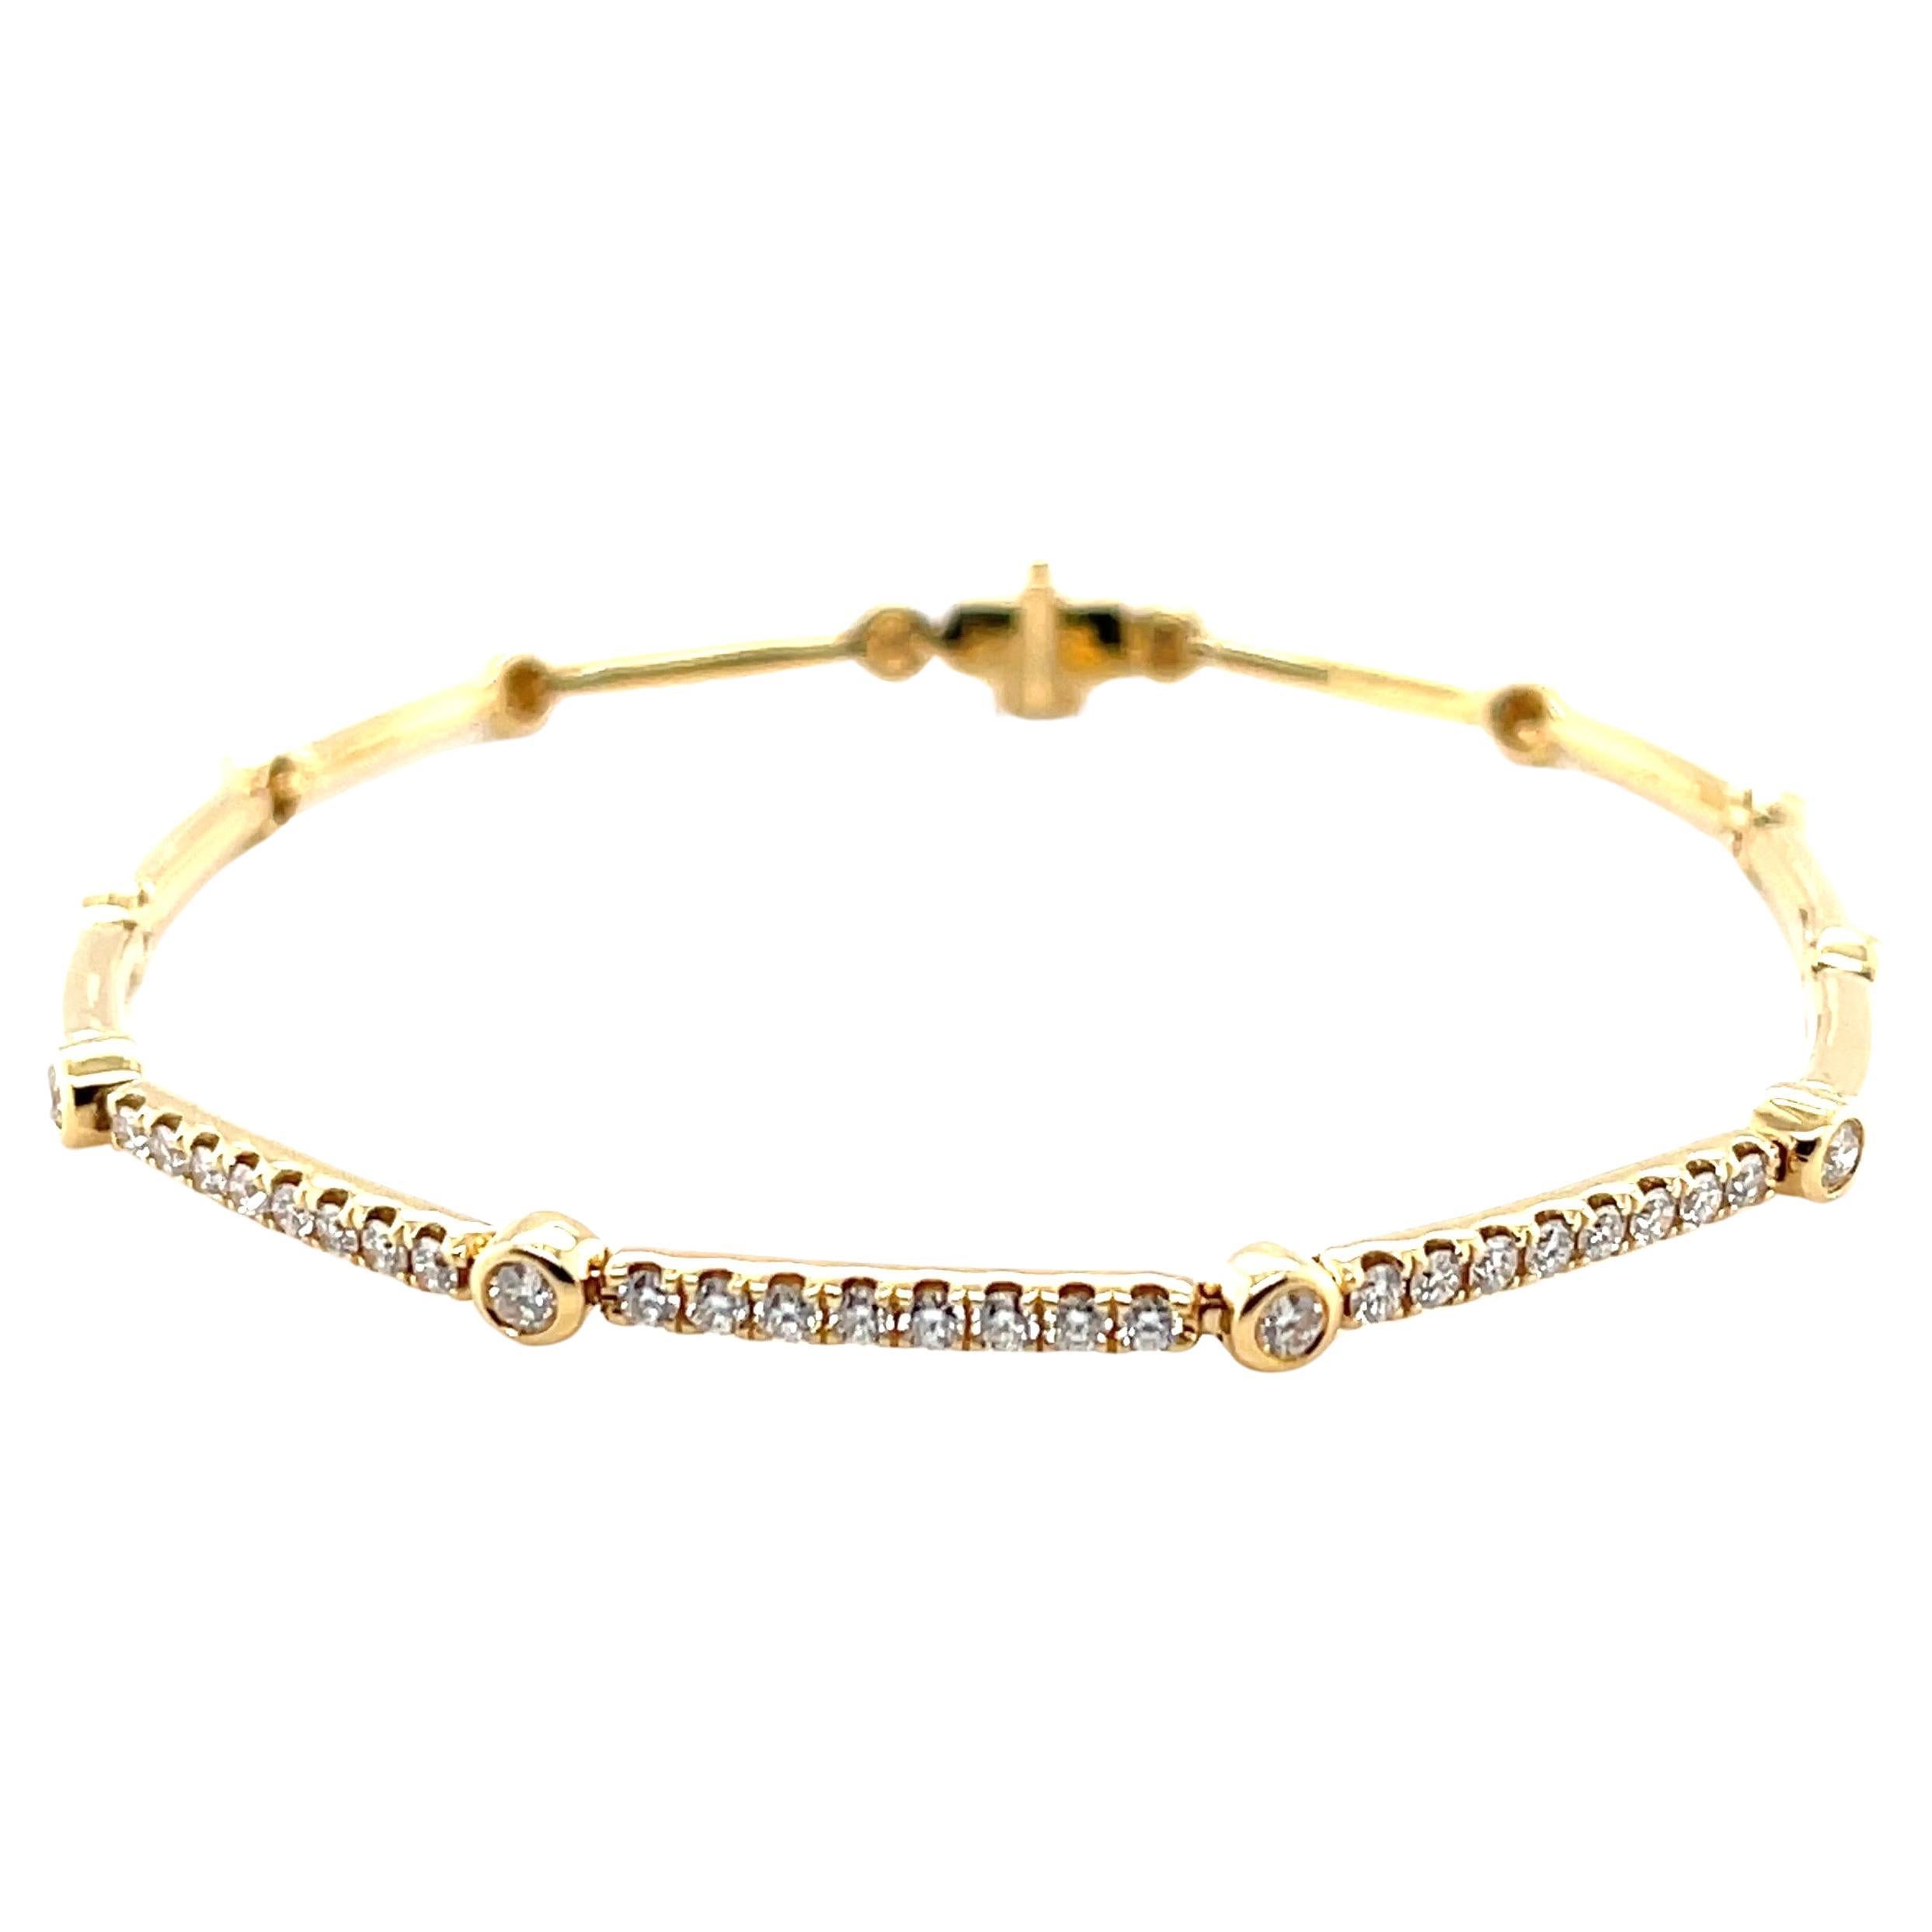 Ce bracelet de tous les jours, d'une grande élégance, comporte plus d'un demi-carat de diamants étincelants sertis dans de l'or jaune 18 carats ! Le design 